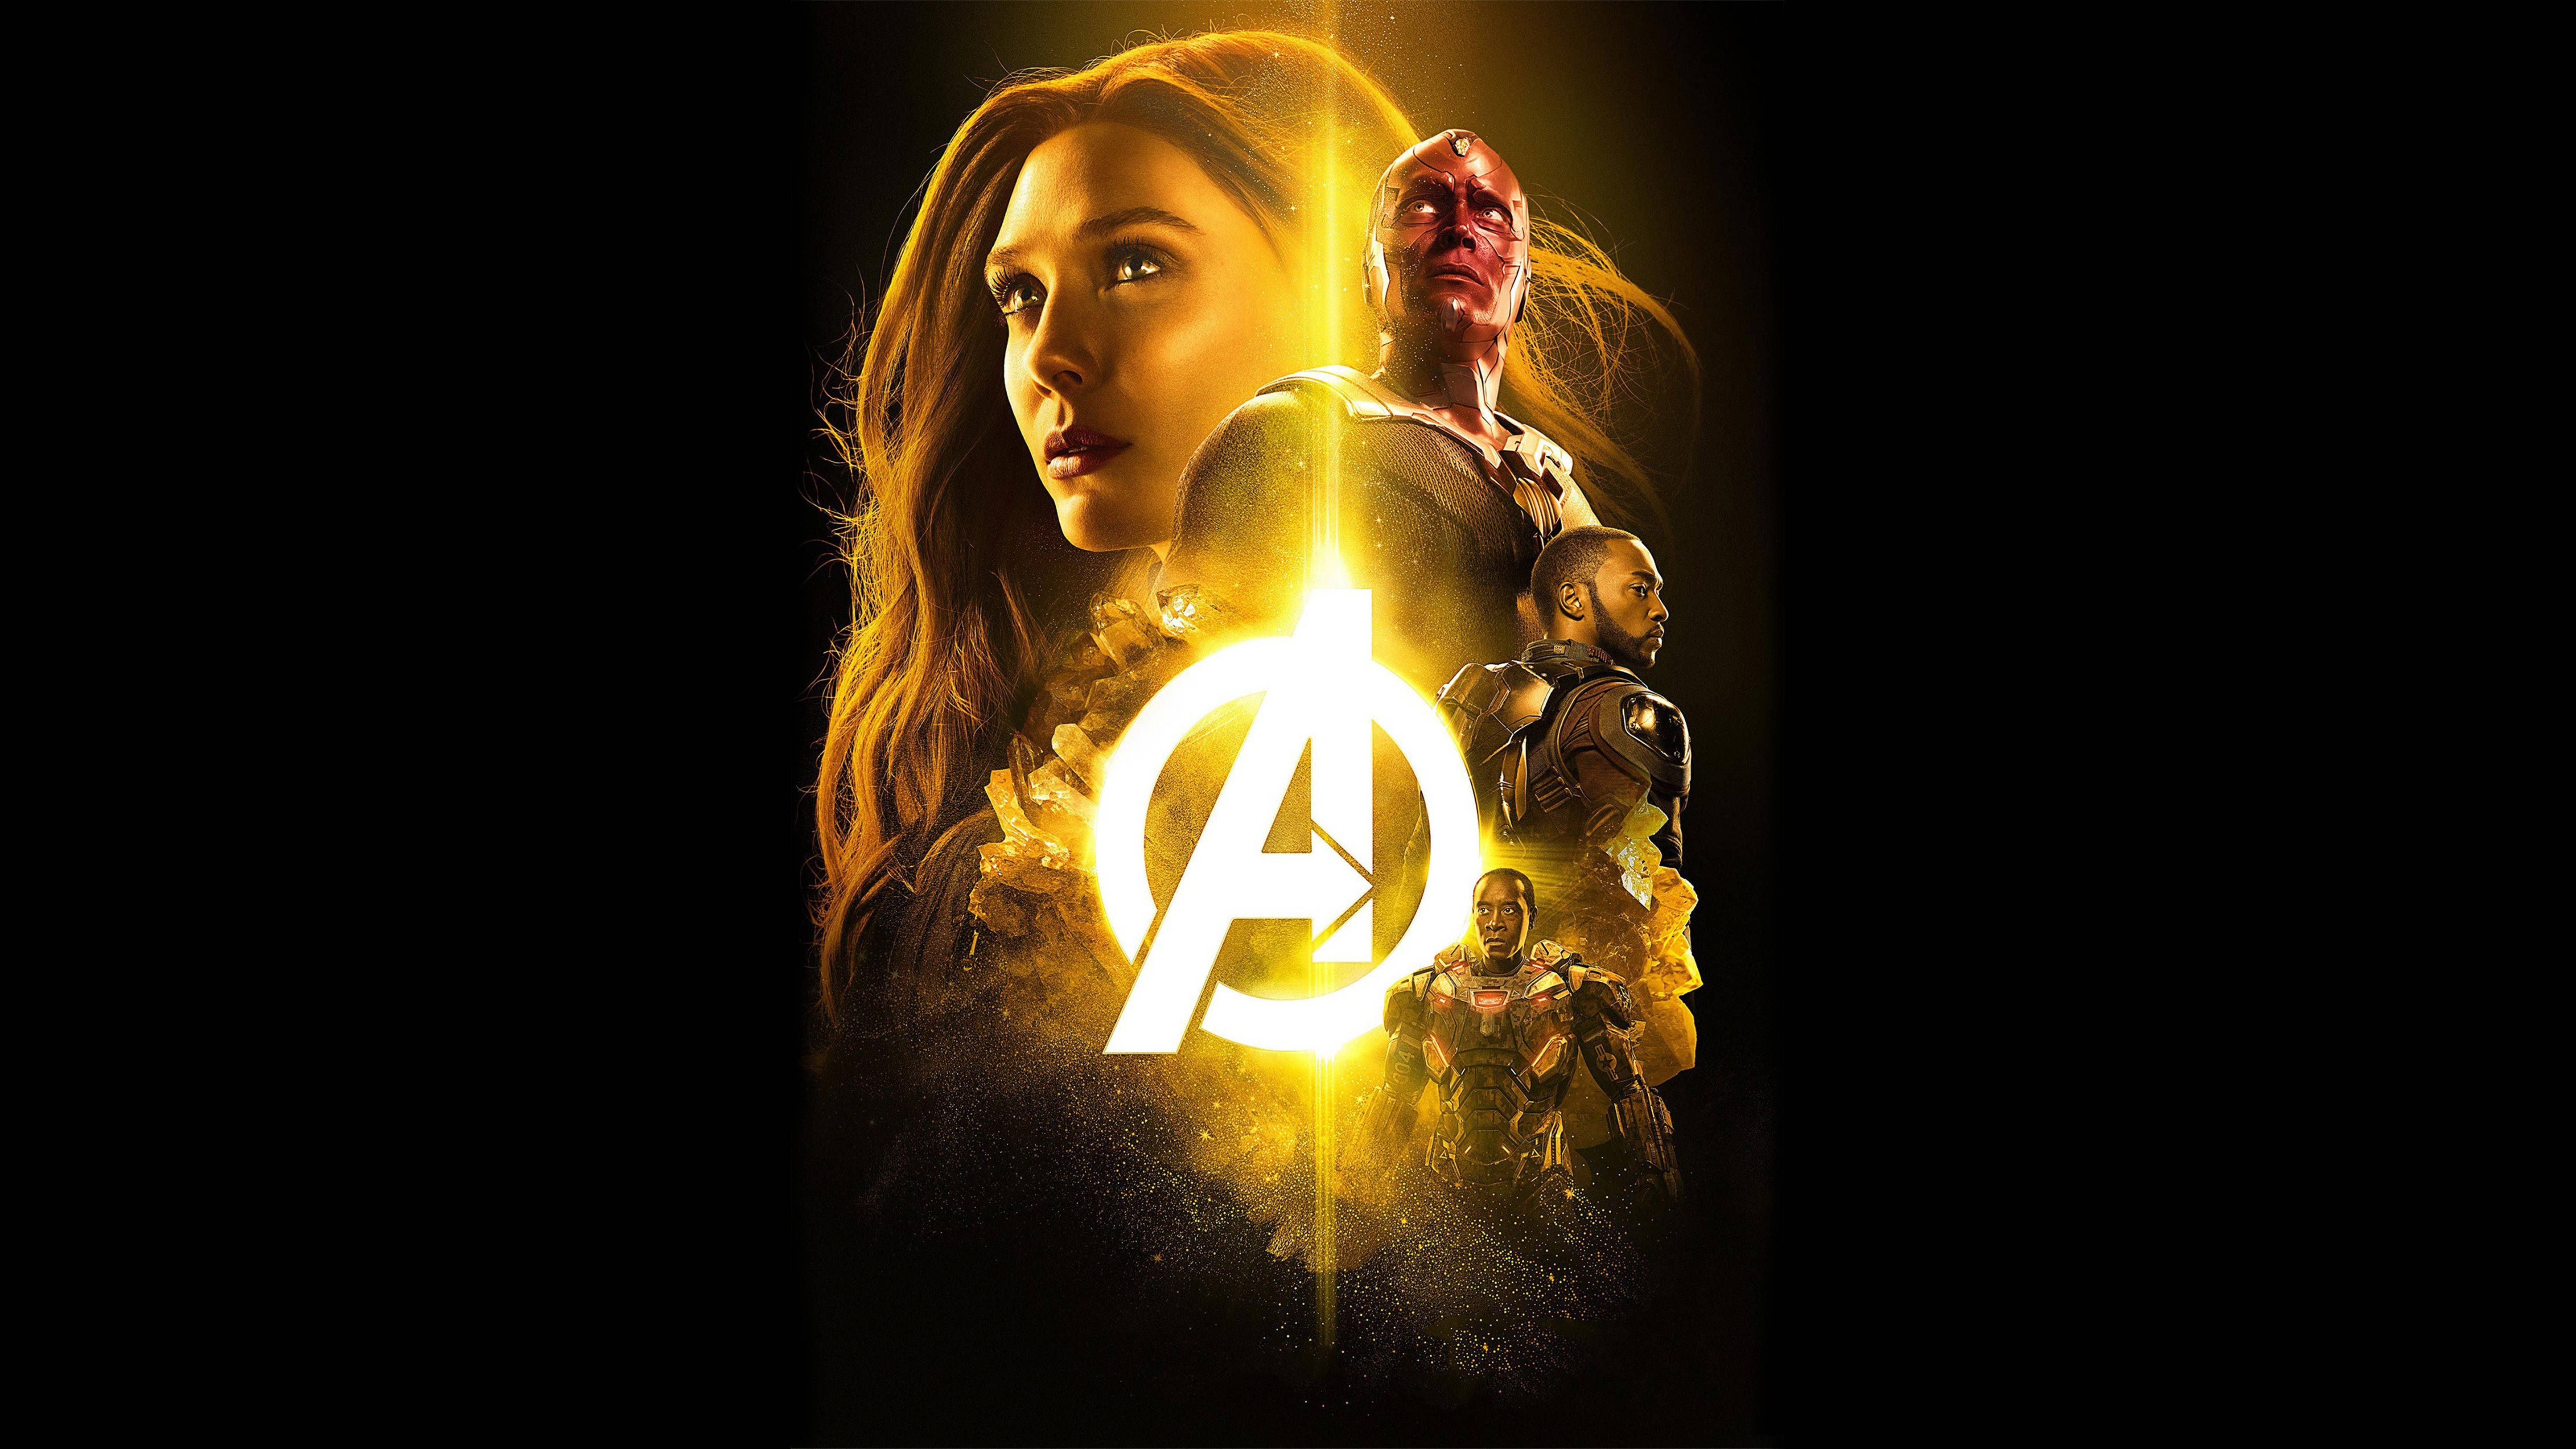 Wanda Avengers Poster 4k Background